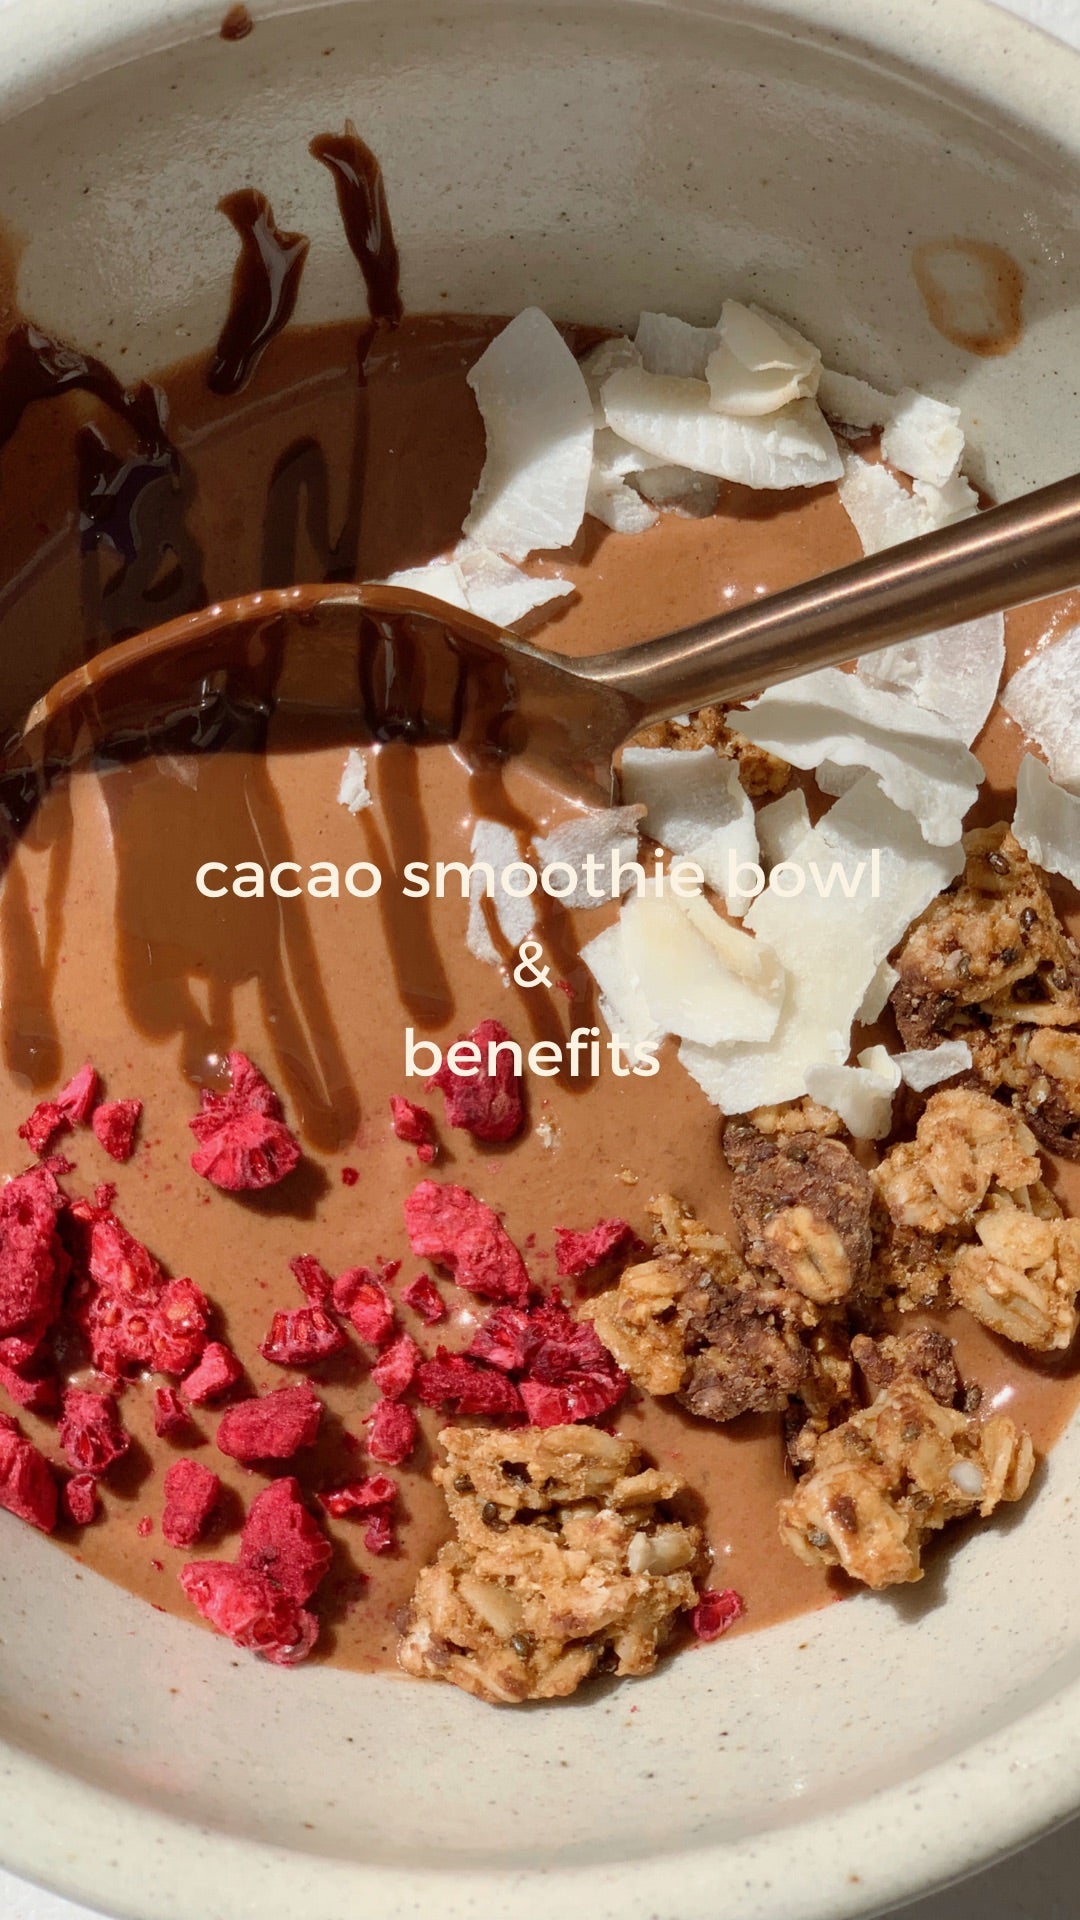 Cacao smoothie bowl